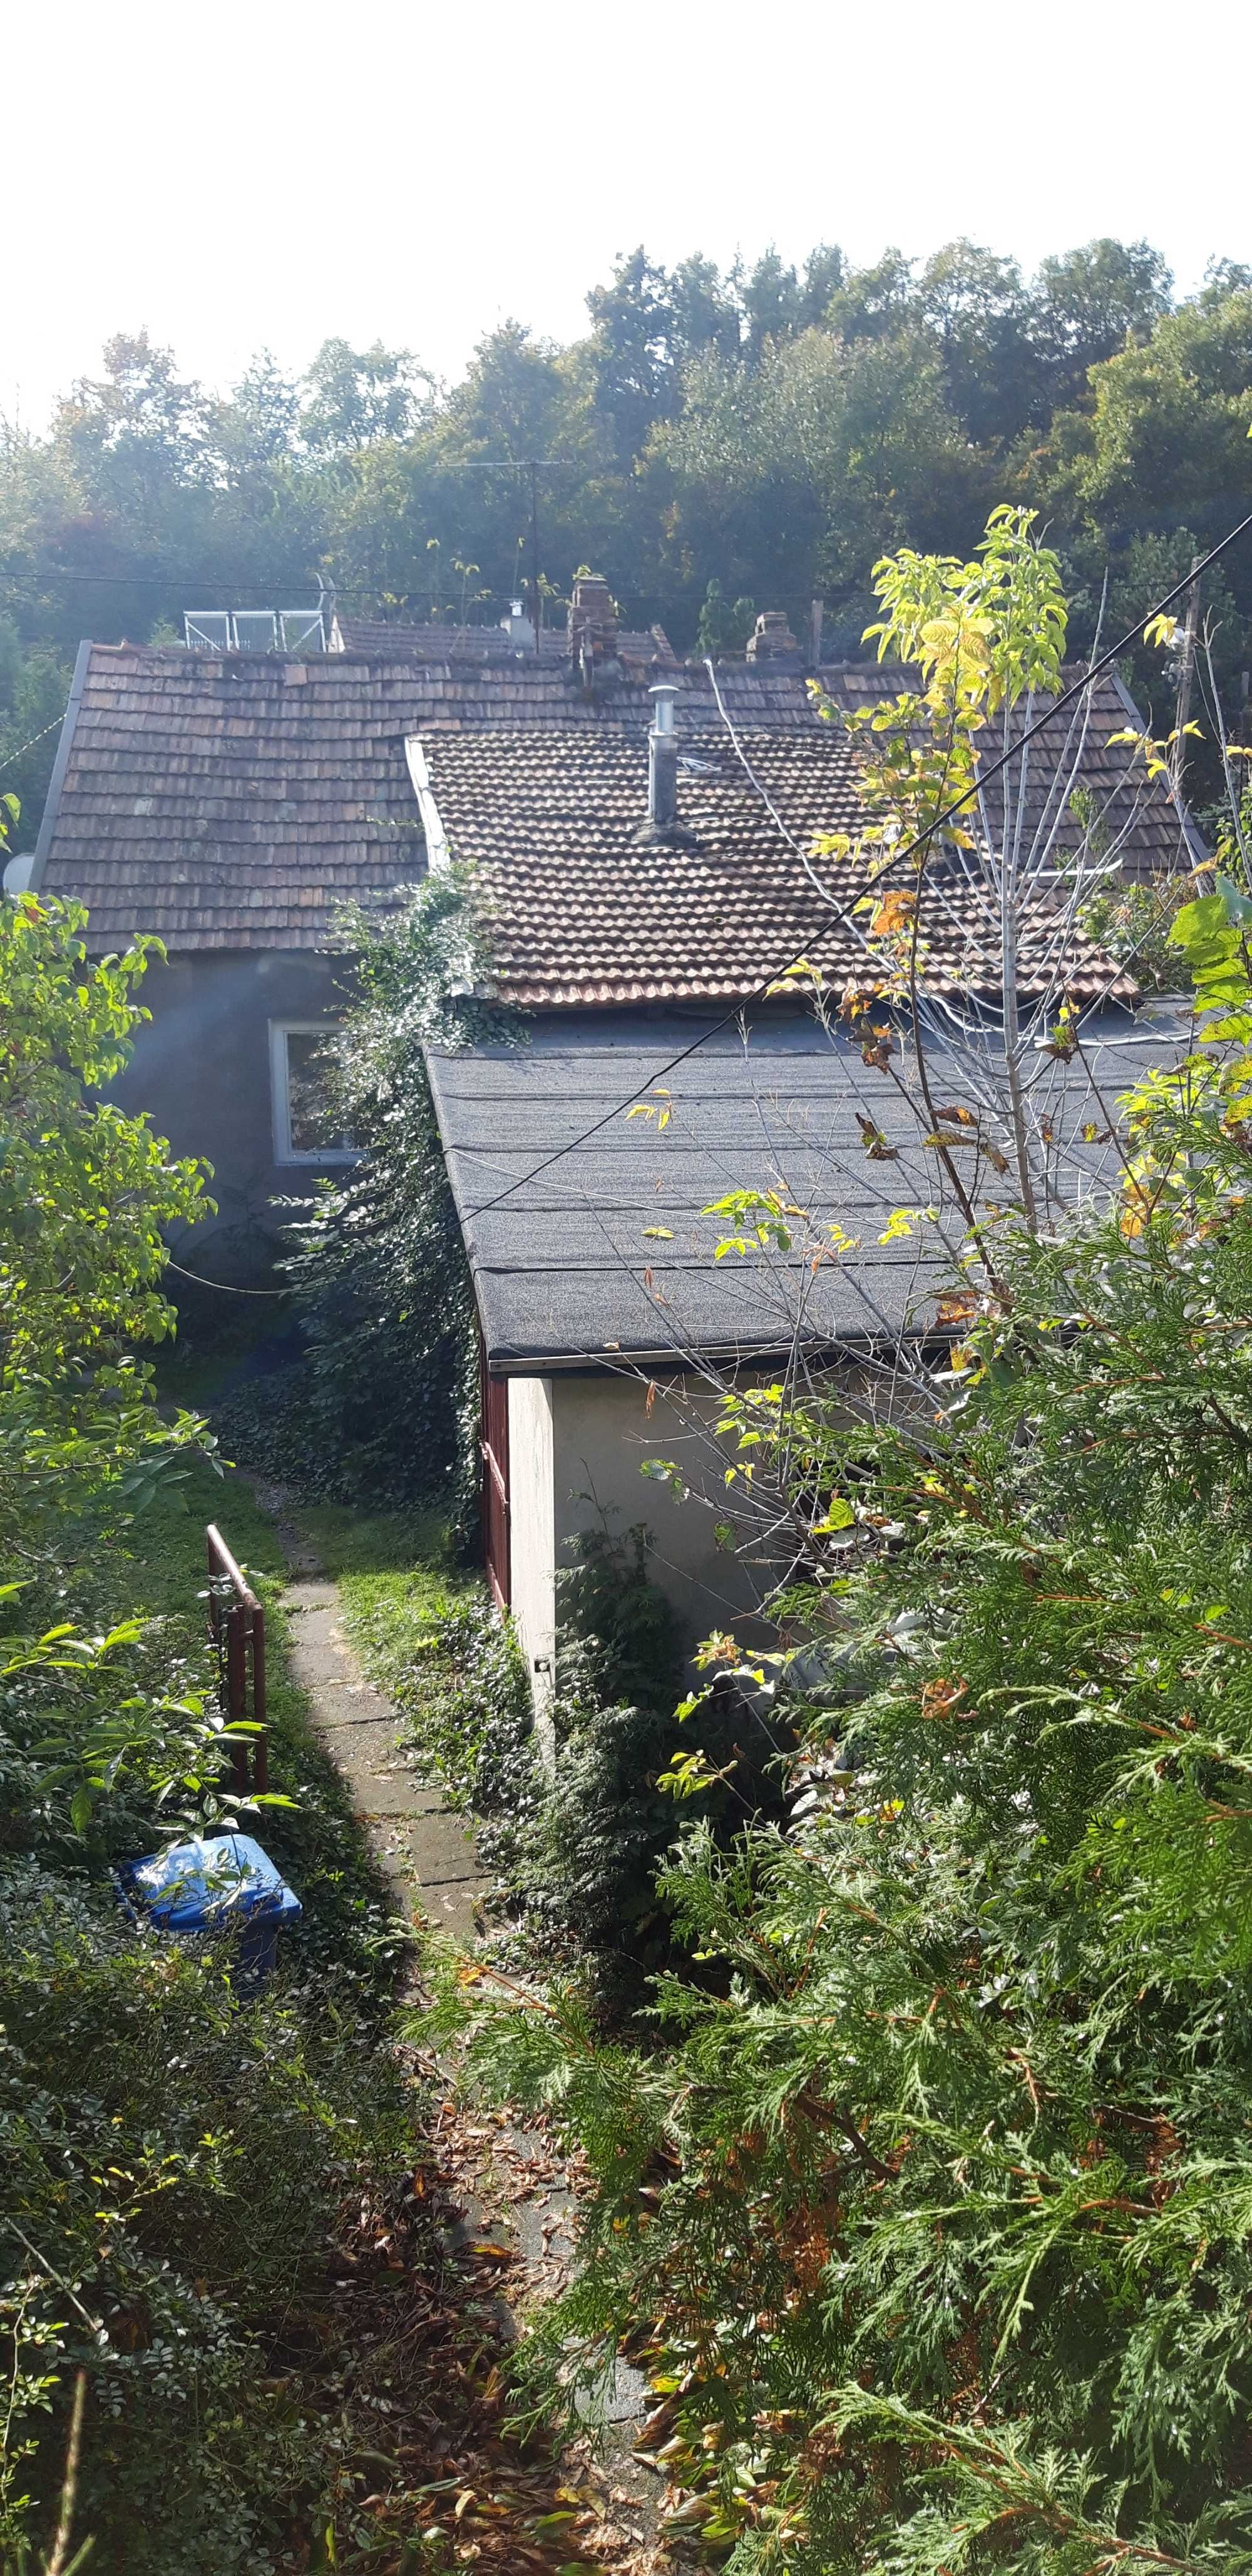 Dom 2 domy do remontu na 1 działce w Krakowie tylko 3420 zł za 1m2